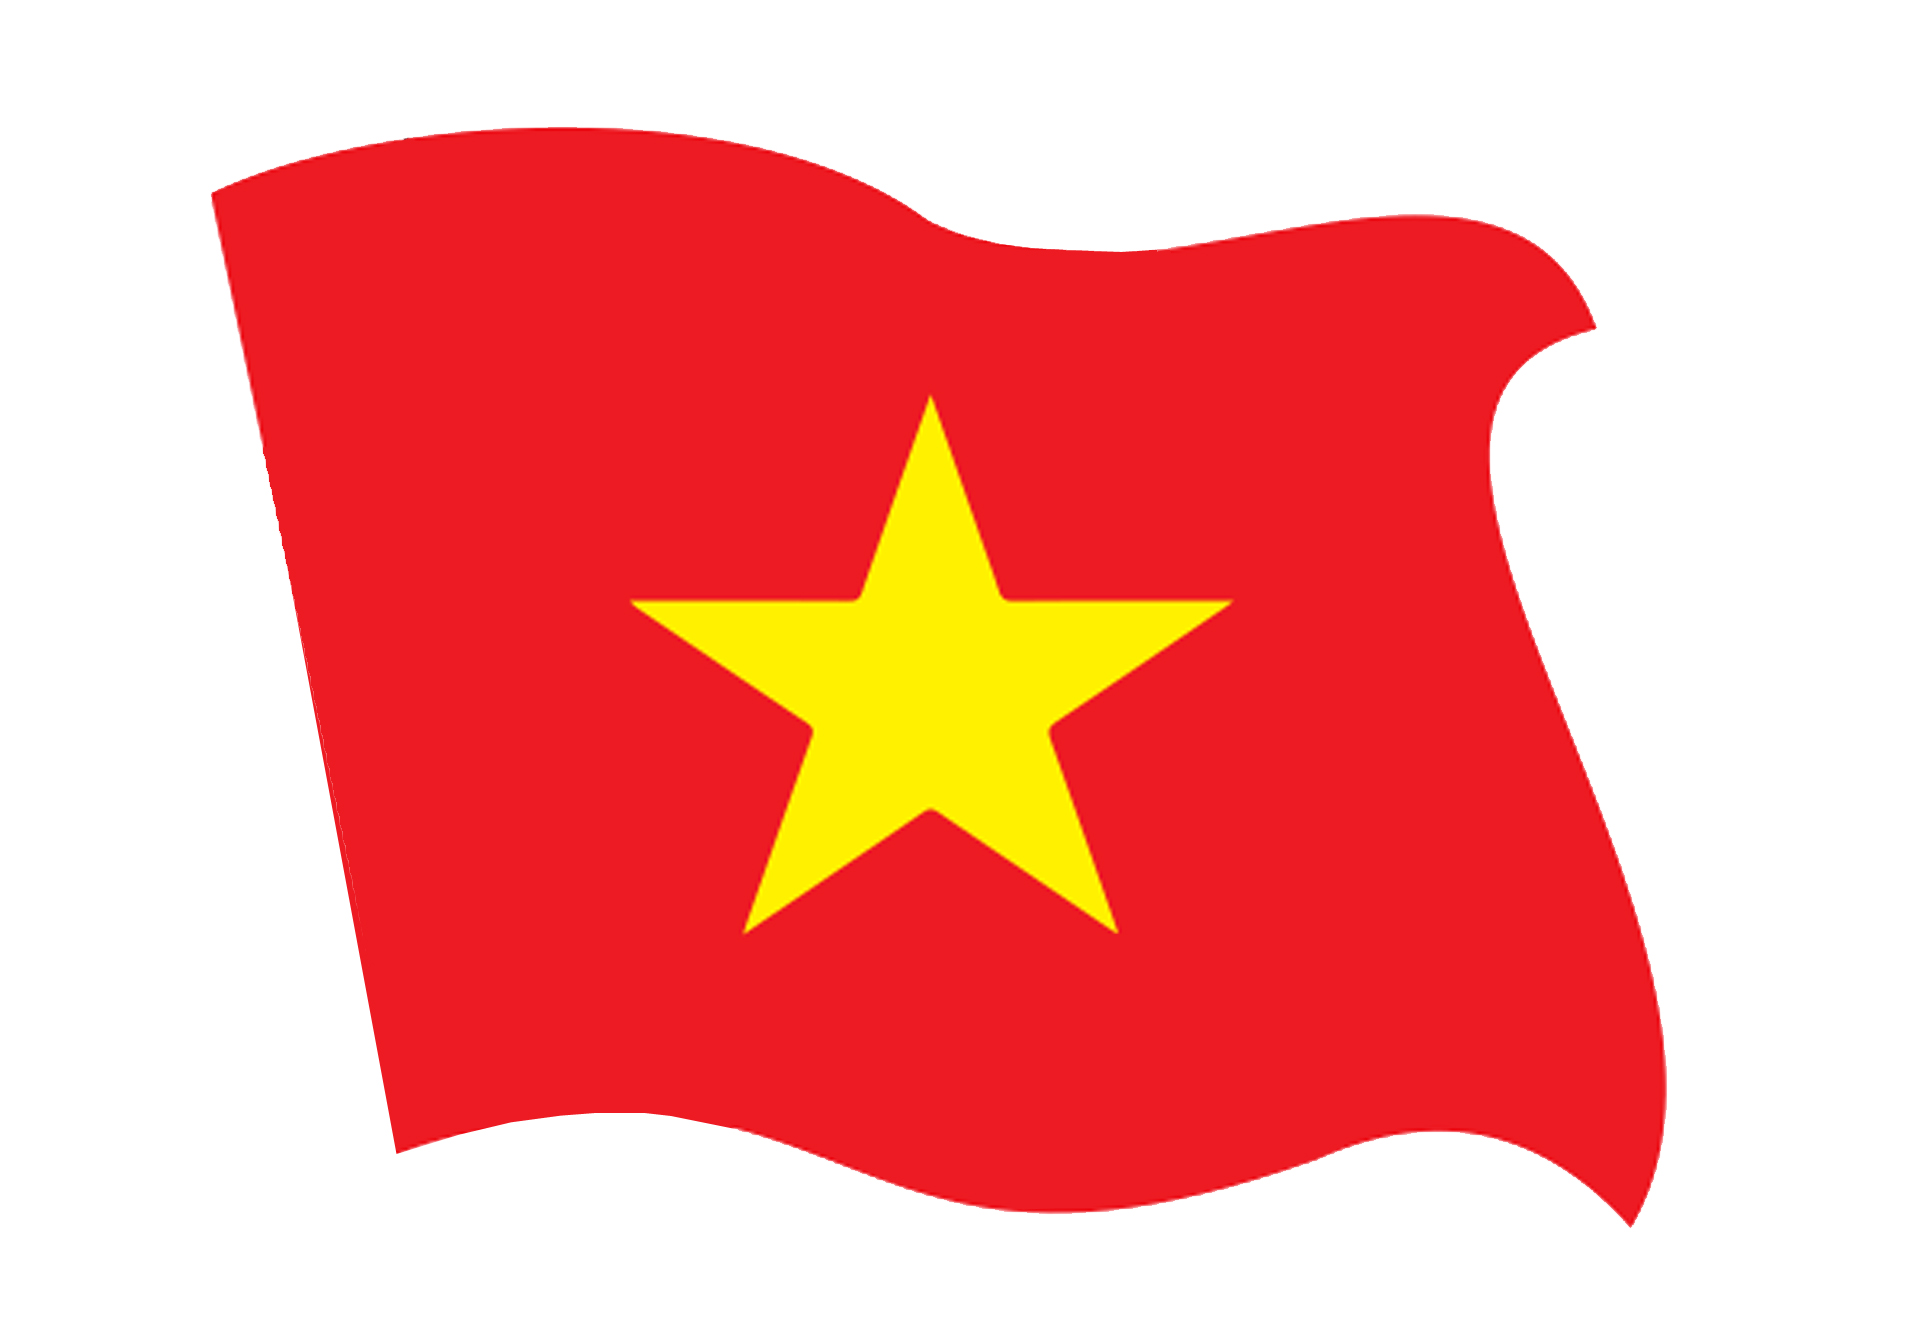 Hãy khám phá logo cờ Việt Nam Png, một biểu tượng đặc trưng của đất nước Việt Nam đã được áp dụng rộng rãi trong nhiều lĩnh vực và sự kiện quan trọng. Logo đơn giản và thể hiện căn bản cho sự tự hào về màu sắc và nền văn hóa của đất nước Việt Nam.